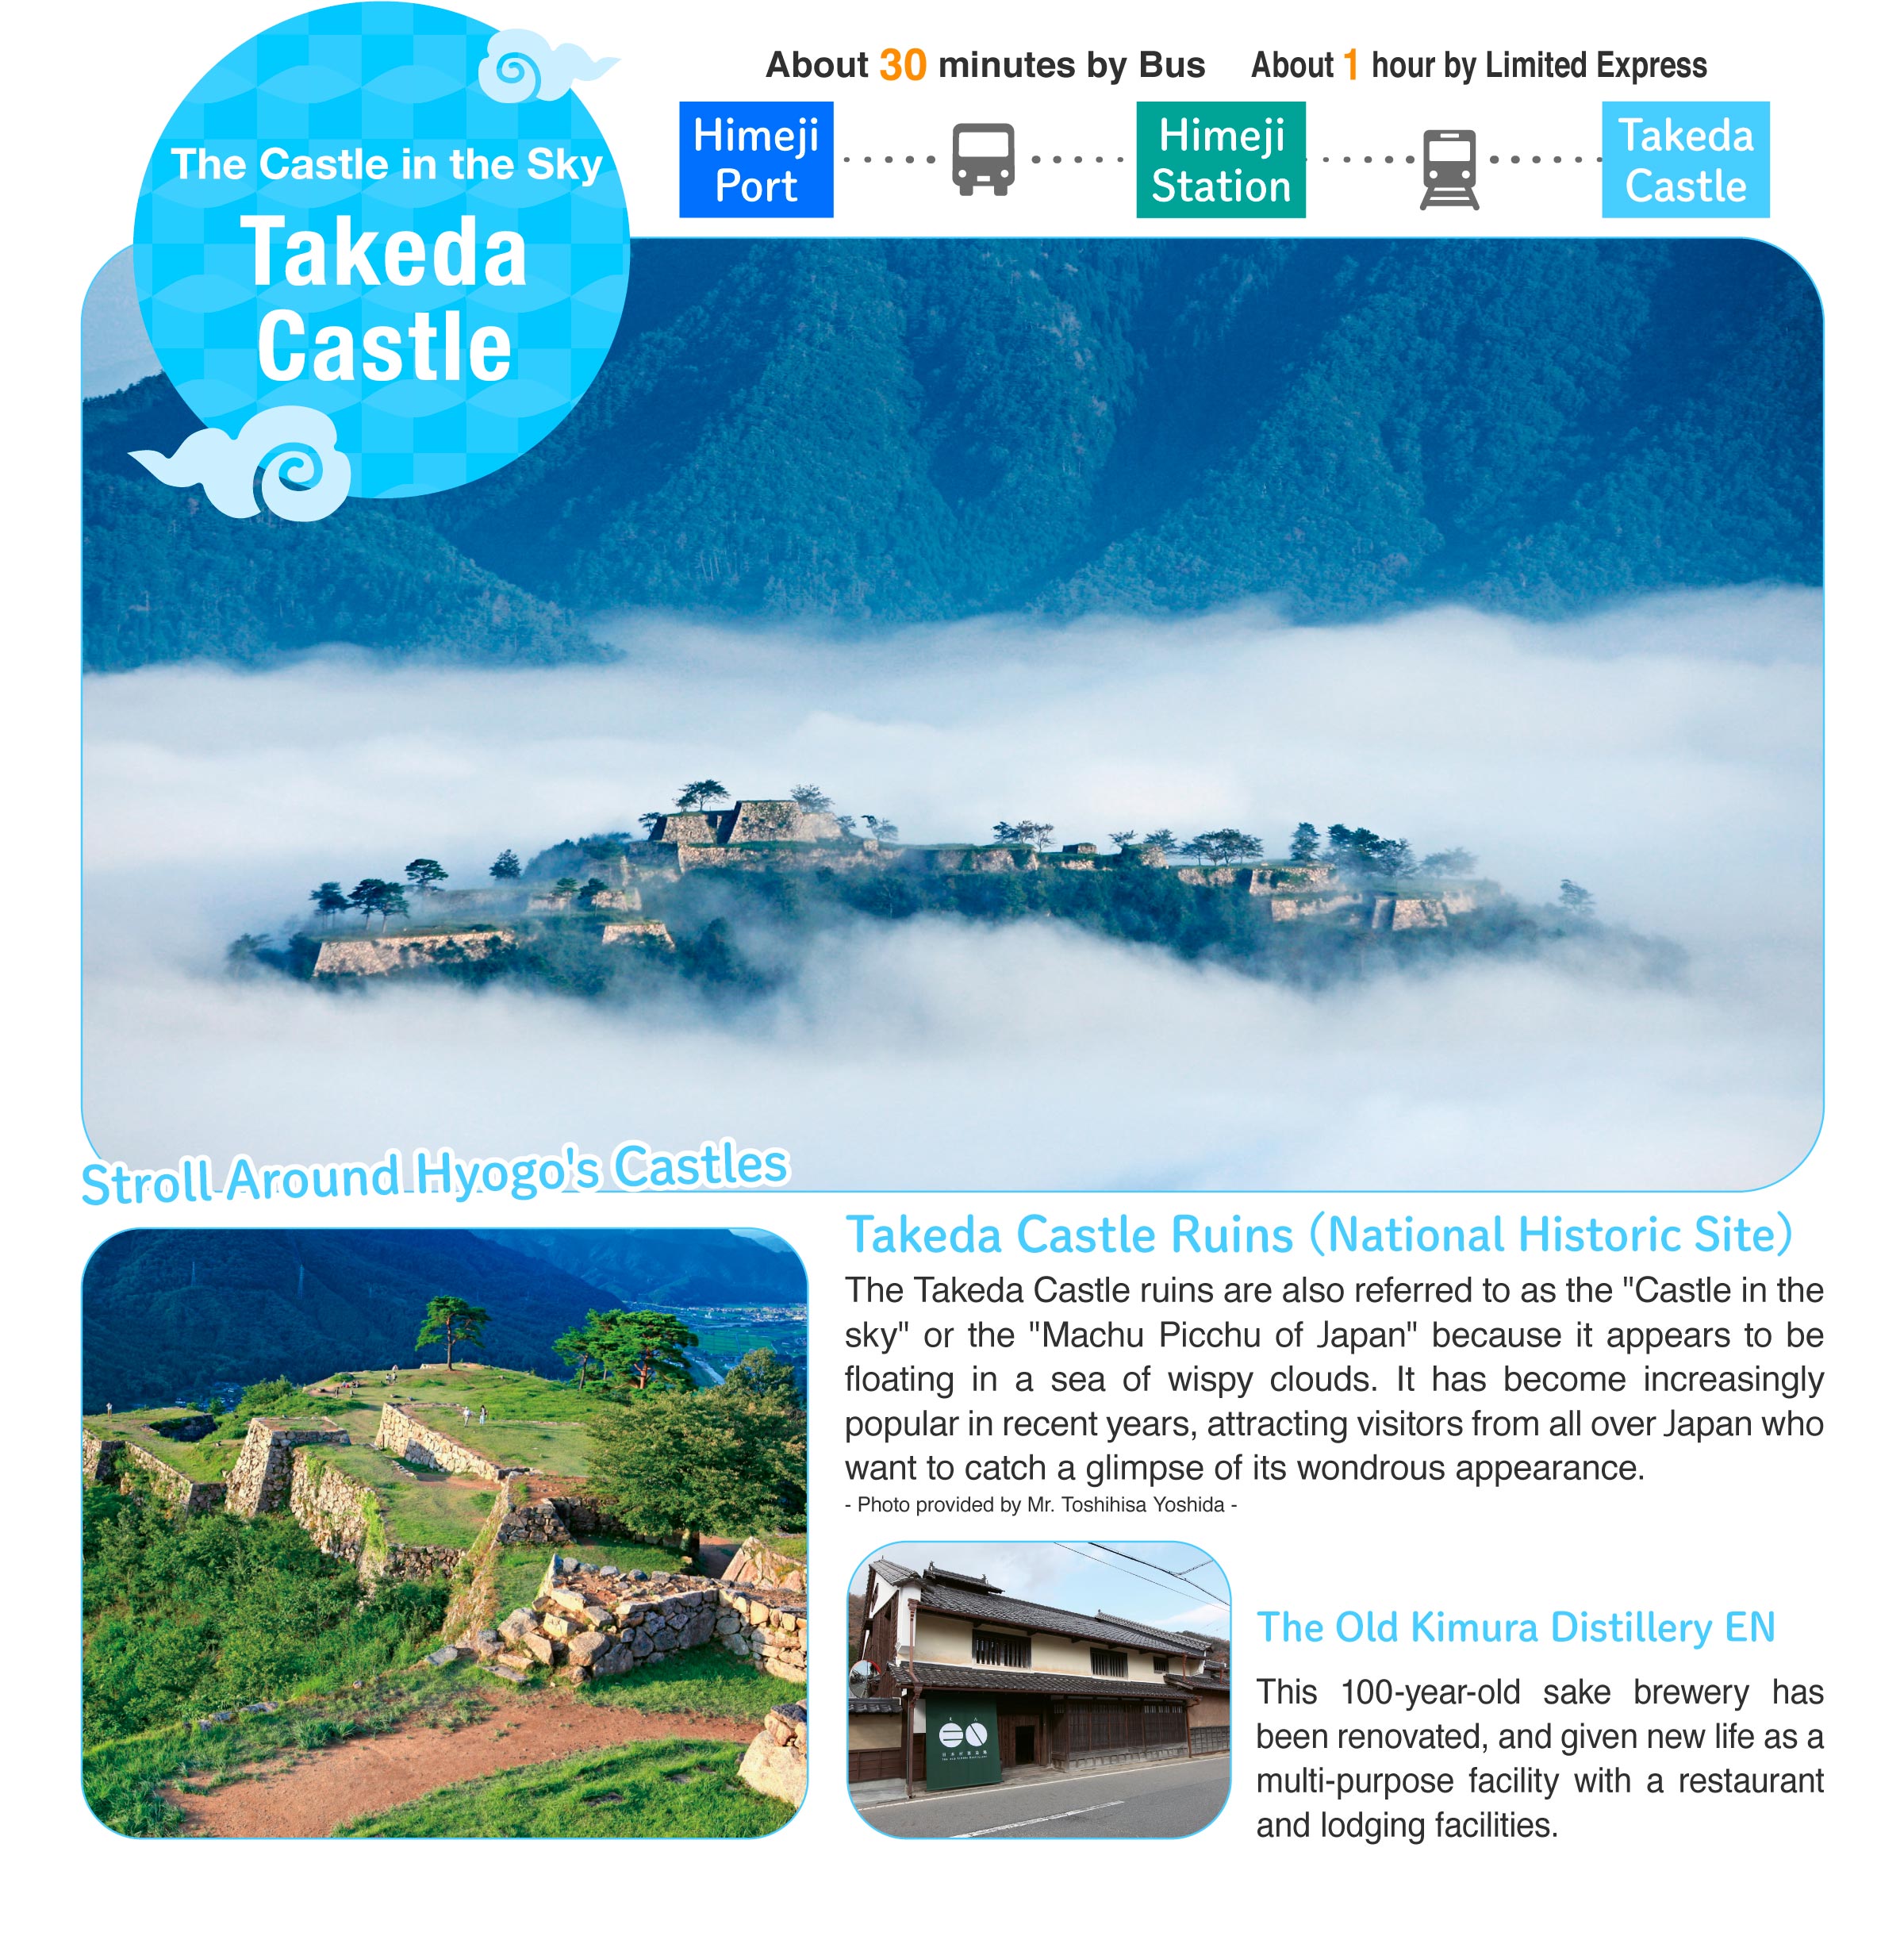 The Castle in the Sky Takeda Castle